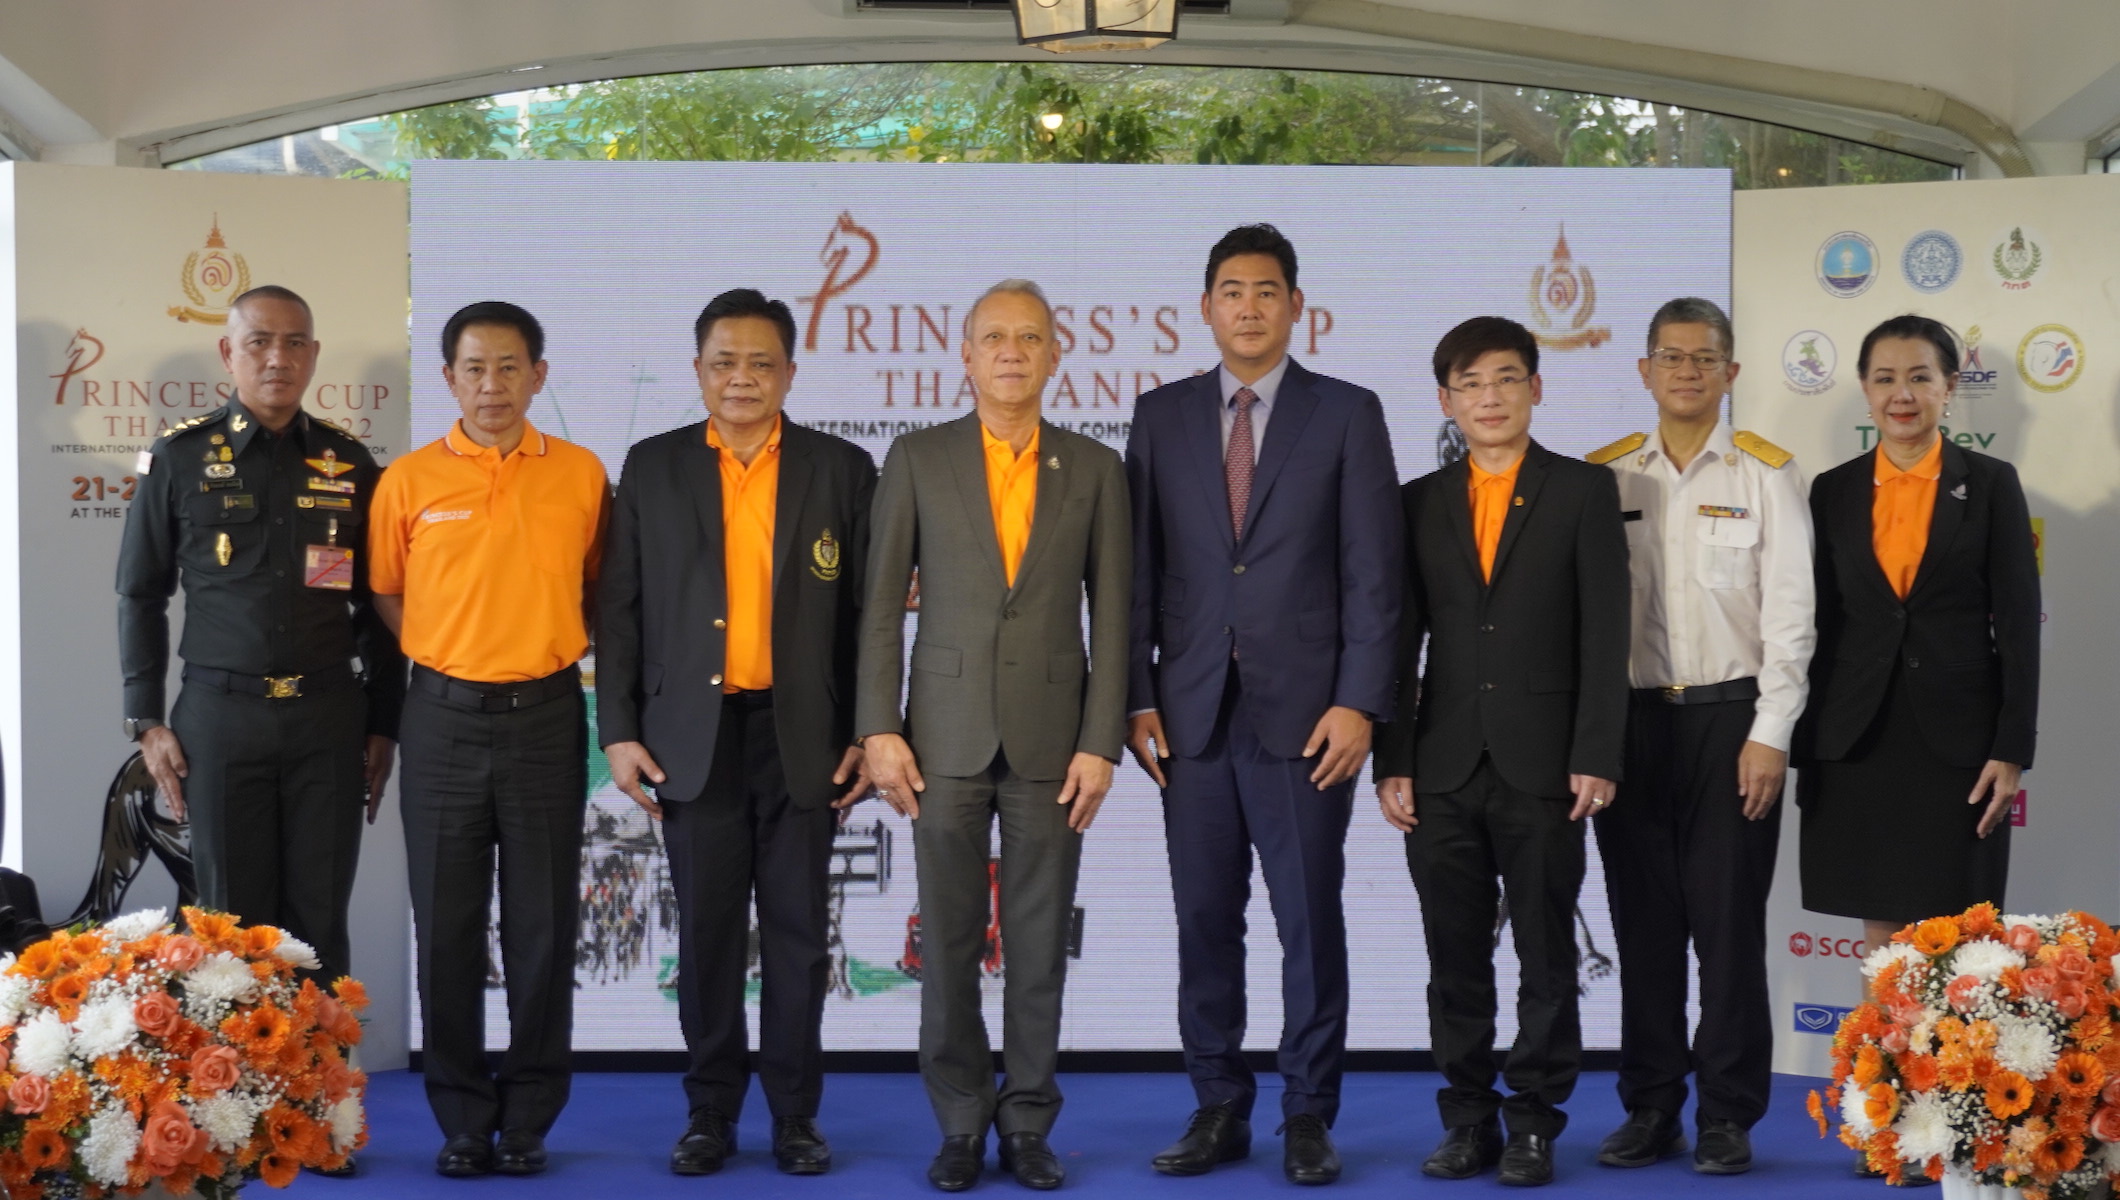 การกลับมาอีกครั้งของการแข่งขันกีฬาขี่ม้า ชิงถ้วยพระราชทาน สมเด็จพระเจ้าลูกเธอ เจ้าฟ้าสิริวัณณวรี นารีรัตนราชกัญญา Princess’s Cup Thailand 2022 ครั้งที่ 8 “TOGETHER, WE ARE ONE”